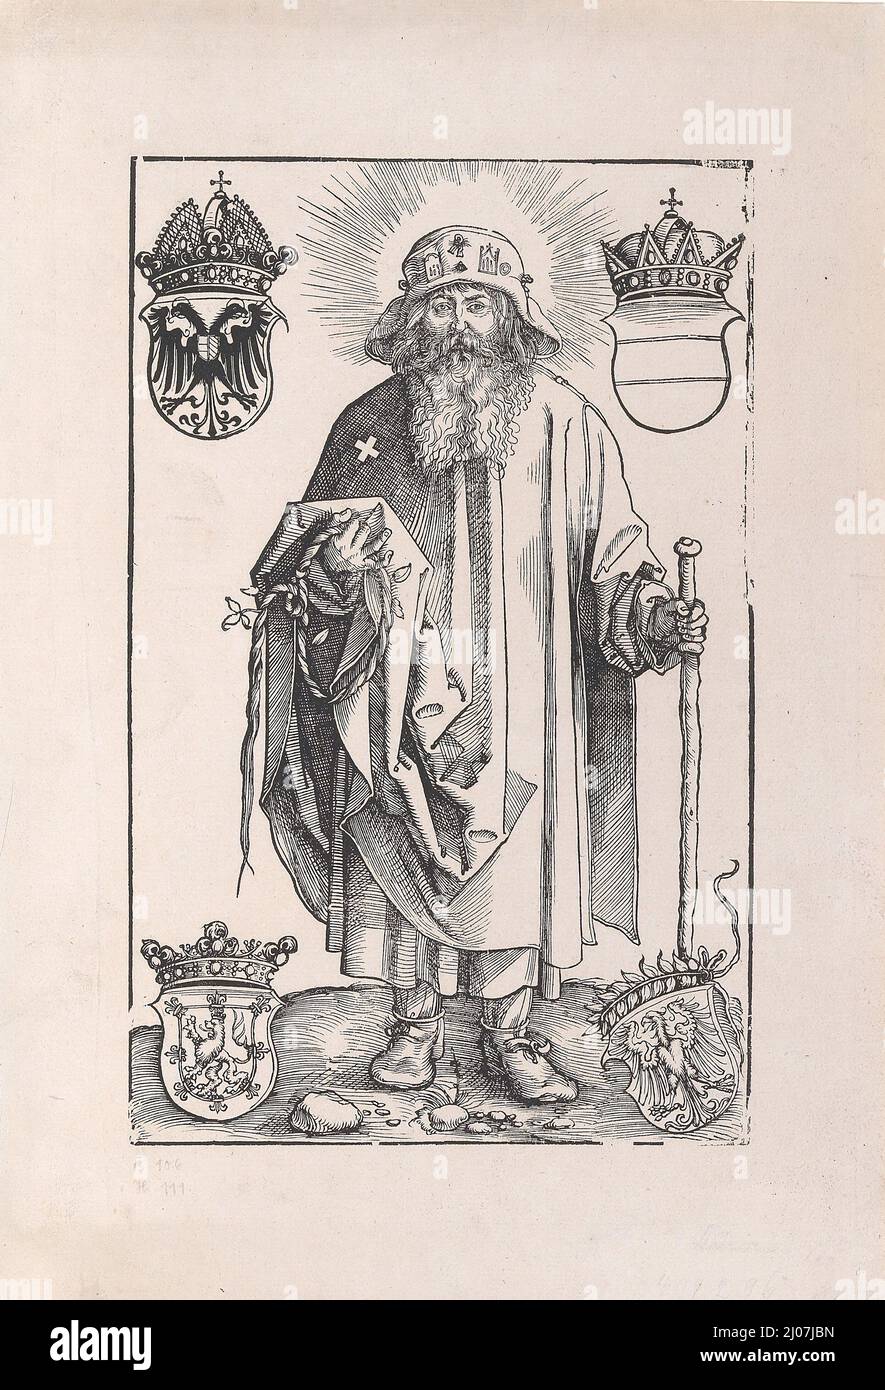 Saint Coloman (Johannes Stabius as Saint Coloman). Museum: PRIVATE COLLECTION. Author: Albrecht Dürer. Stock Photo